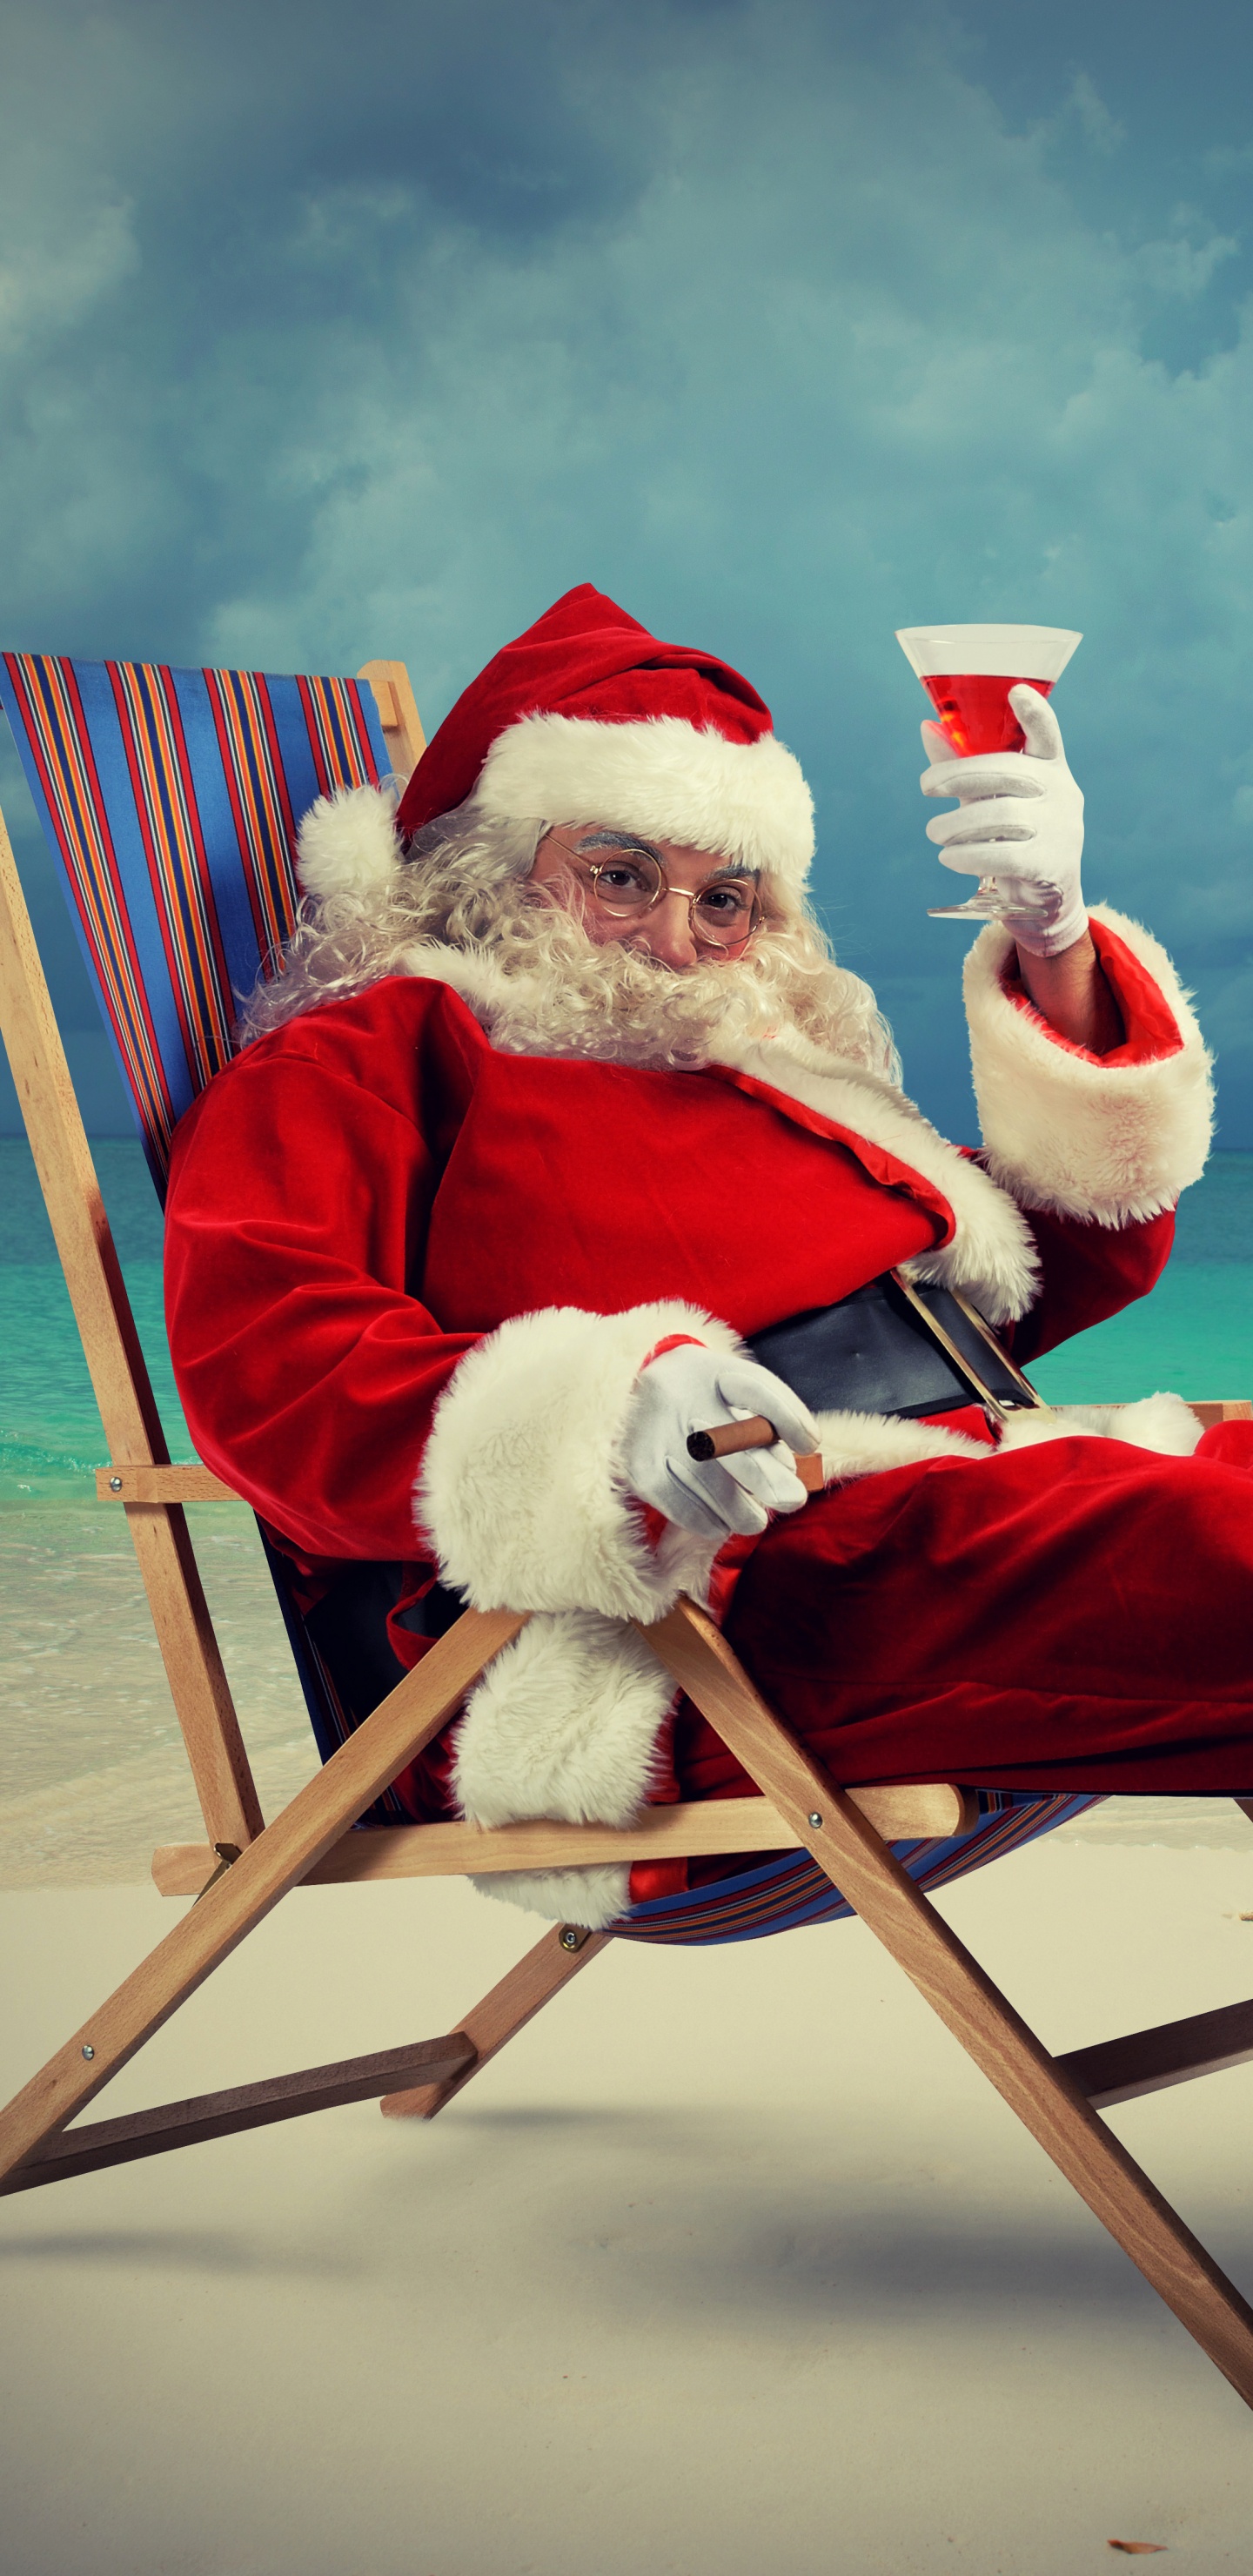 El Día De Navidad, Santa Claus, Navidad, Ded Moroz, Vacaciones. Wallpaper in 1440x2960 Resolution